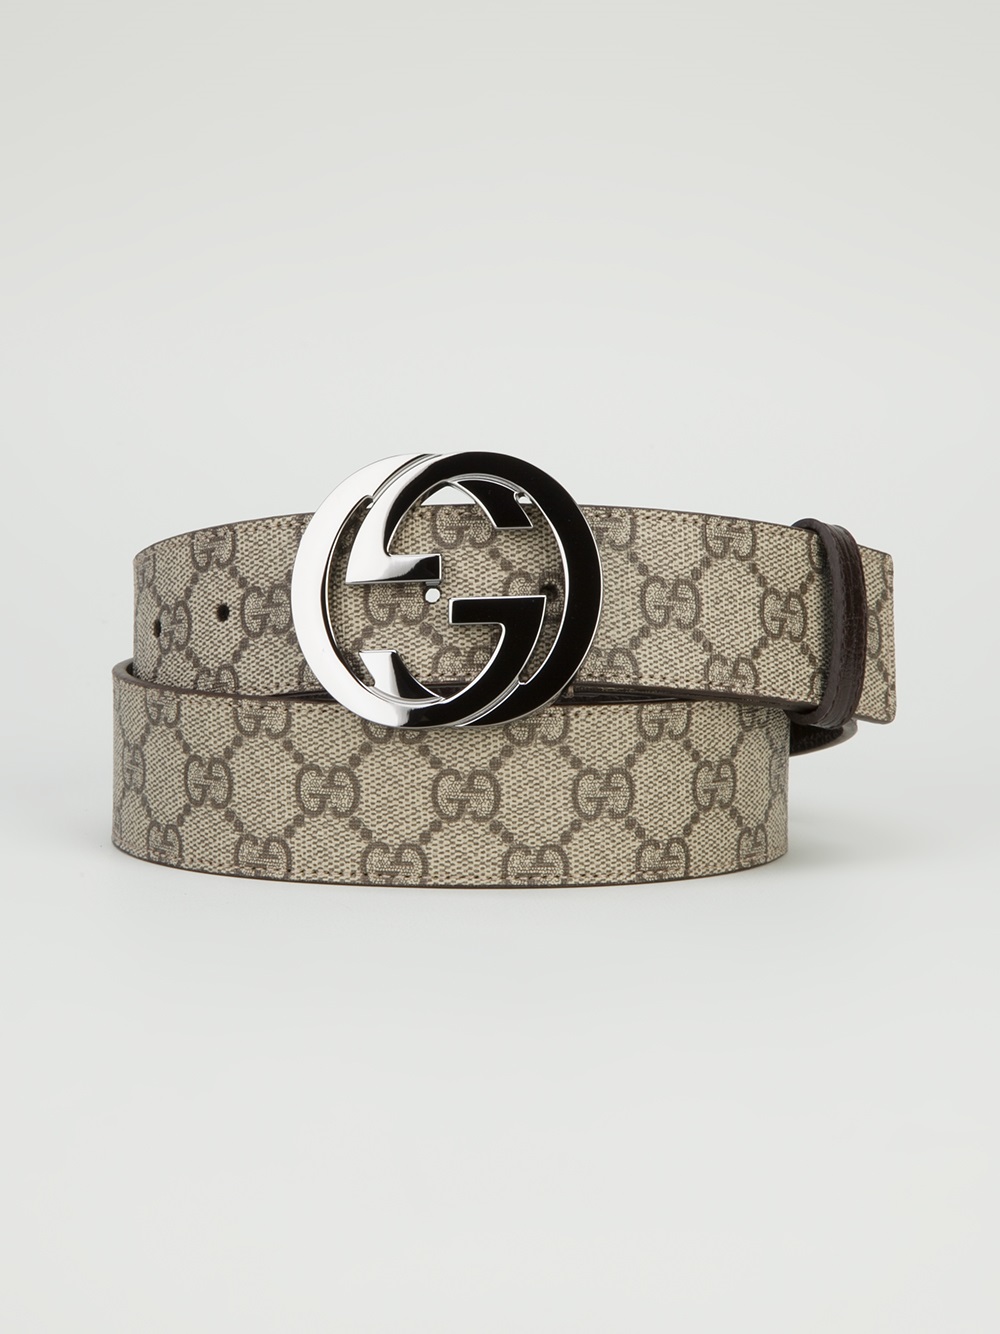 Gucci Monogram Belt in Natural for Men | Lyst